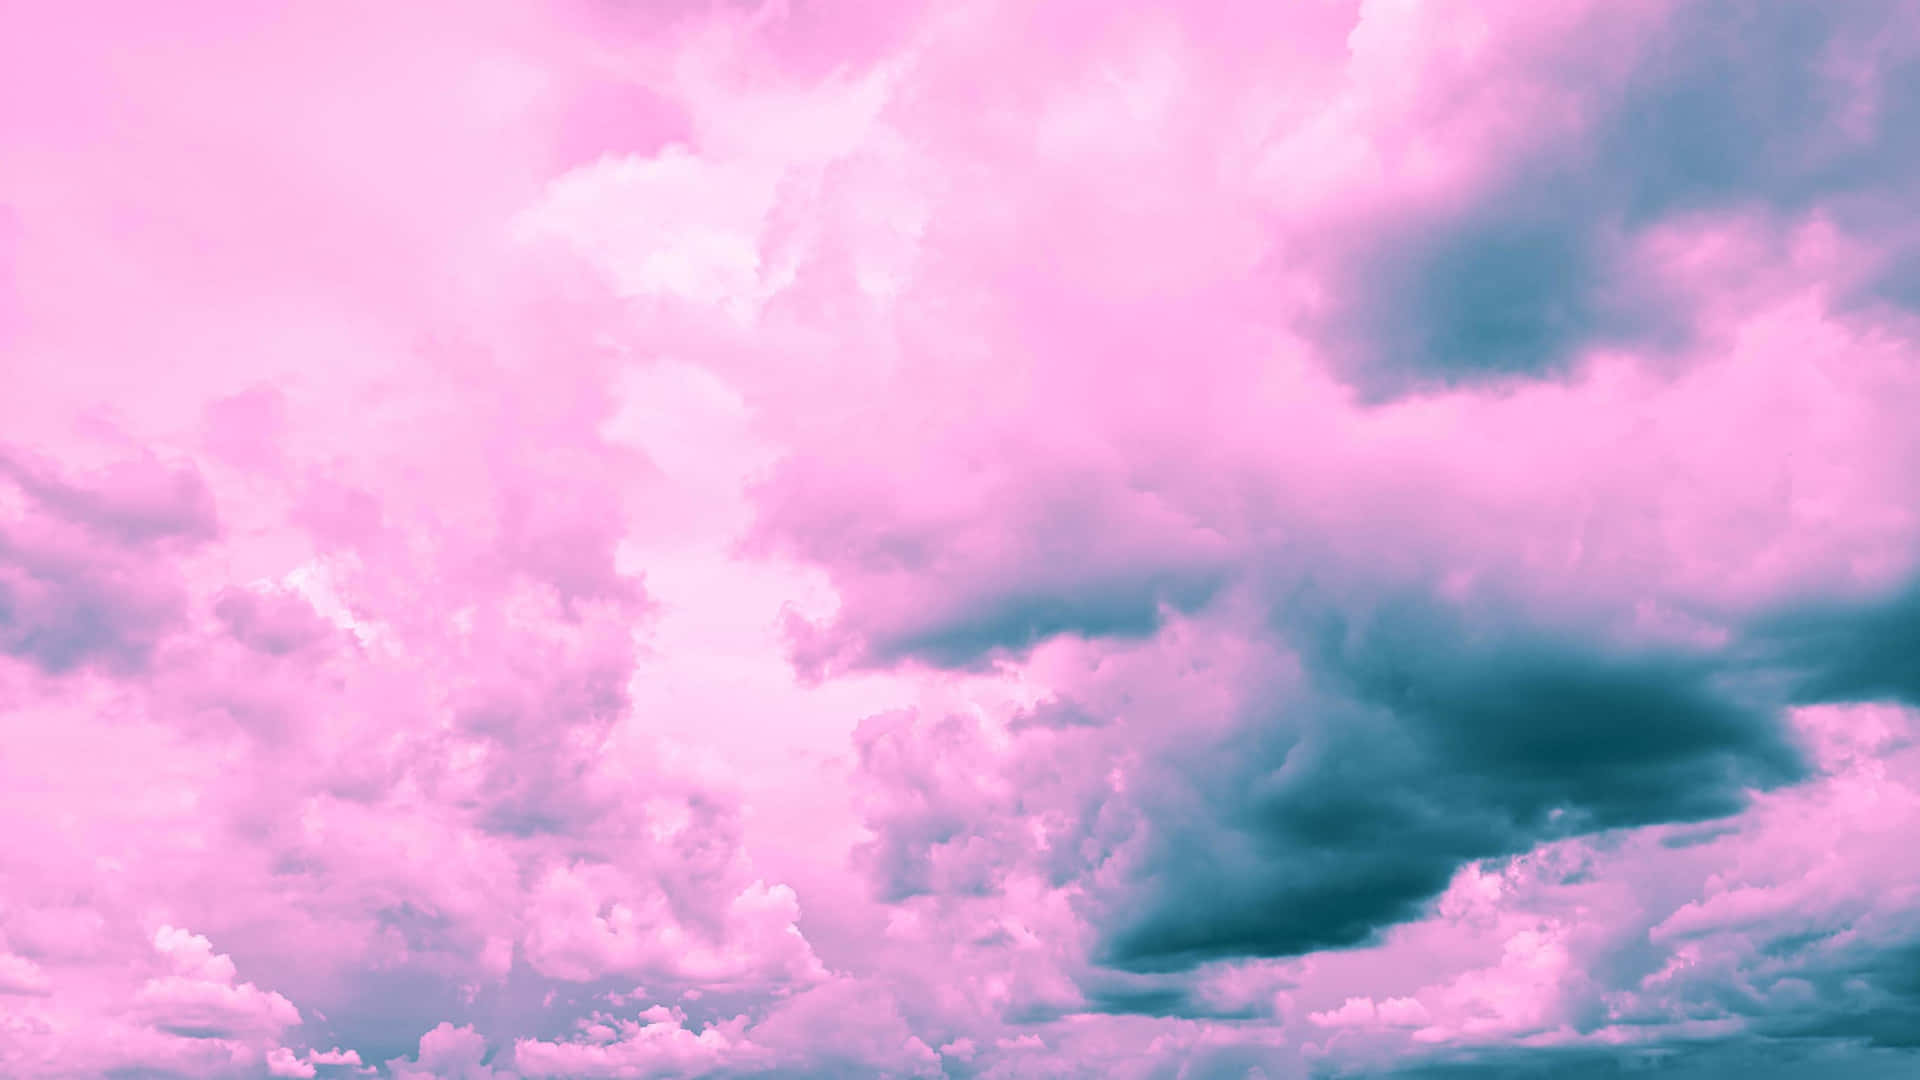 Cielonocturno Con Nubes Rosas Y Azules. Fondo de pantalla